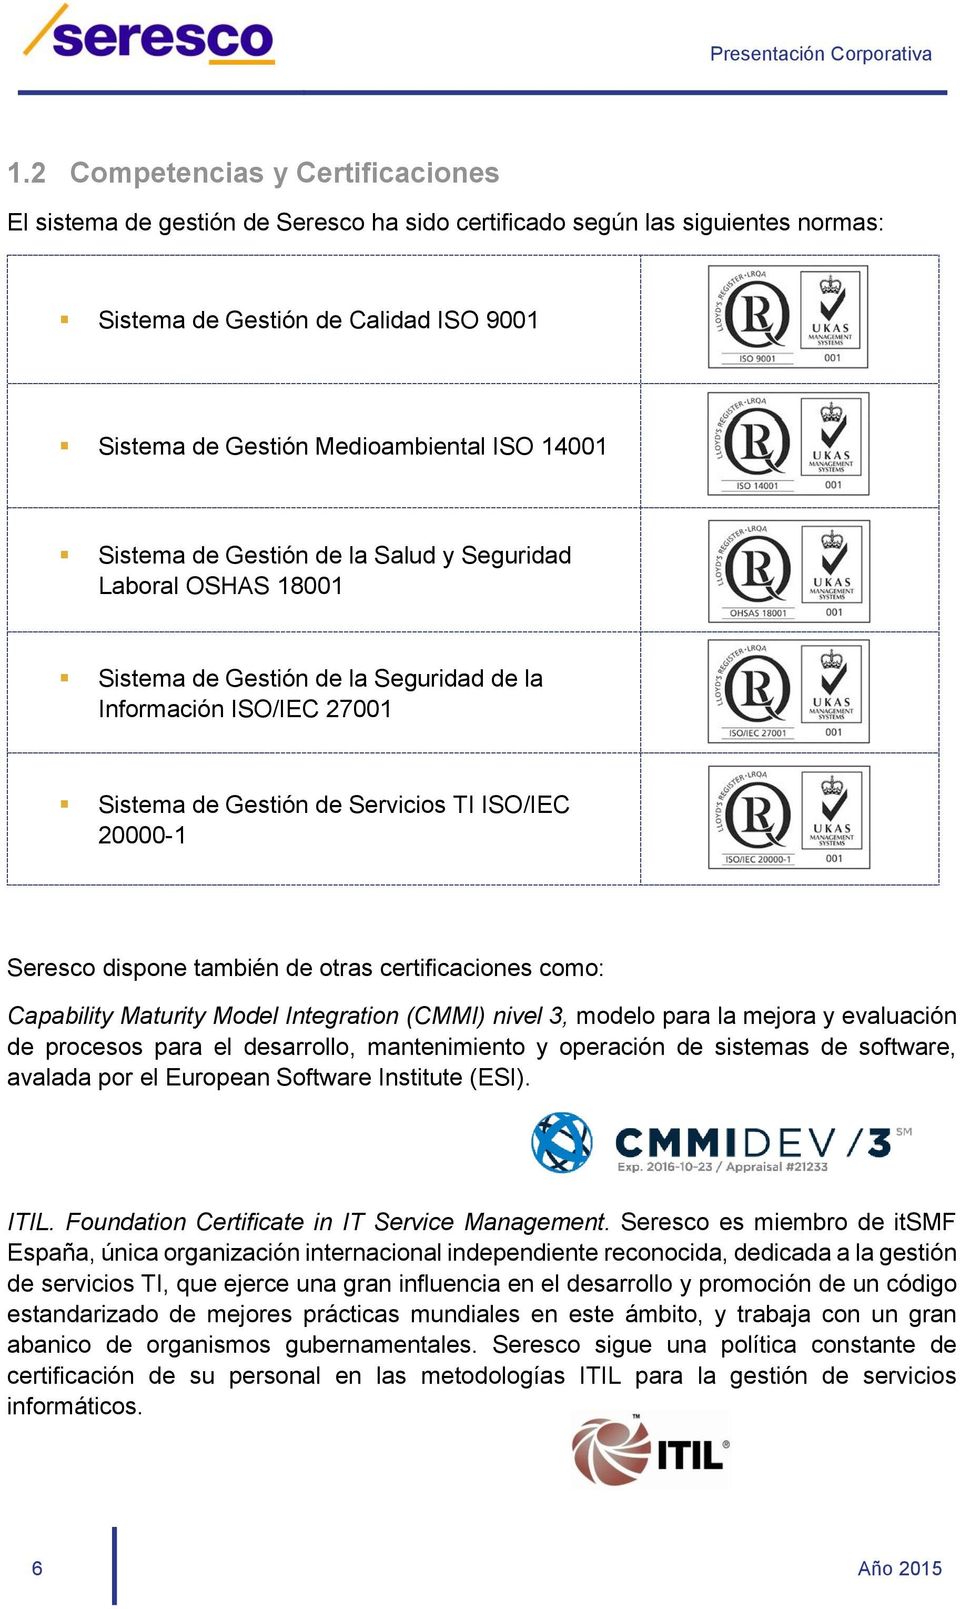 también de otras certificaciones como: Capability Maturity Model Integration (CMMI) nivel 3, modelo para la mejora y evaluación de procesos para el desarrollo, mantenimiento y operación de sistemas